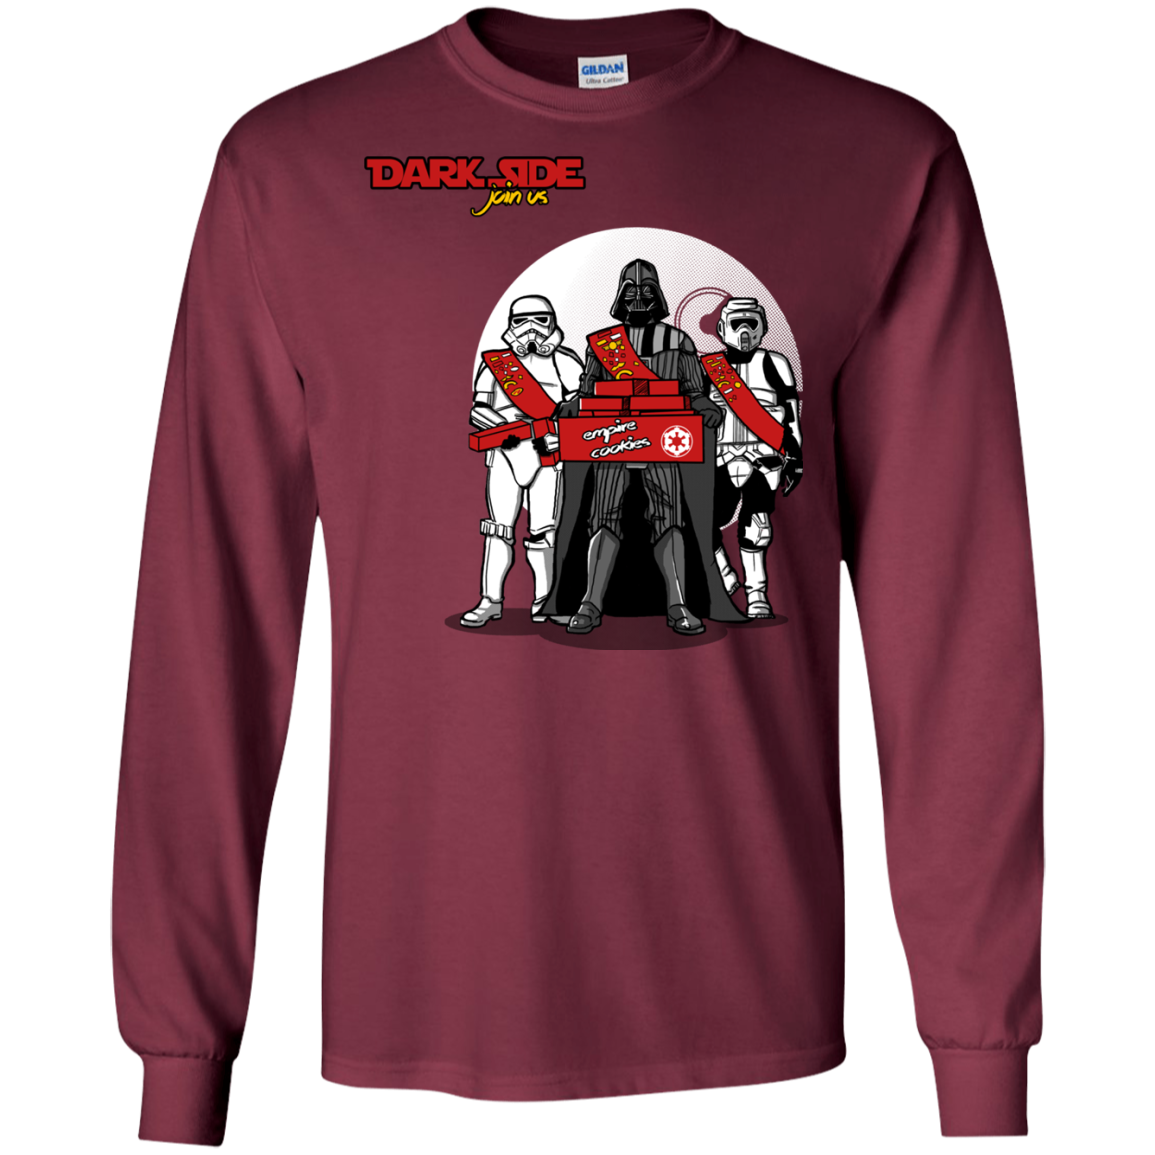 Join The Dark Side Men's Long Sleeve T-Shirt